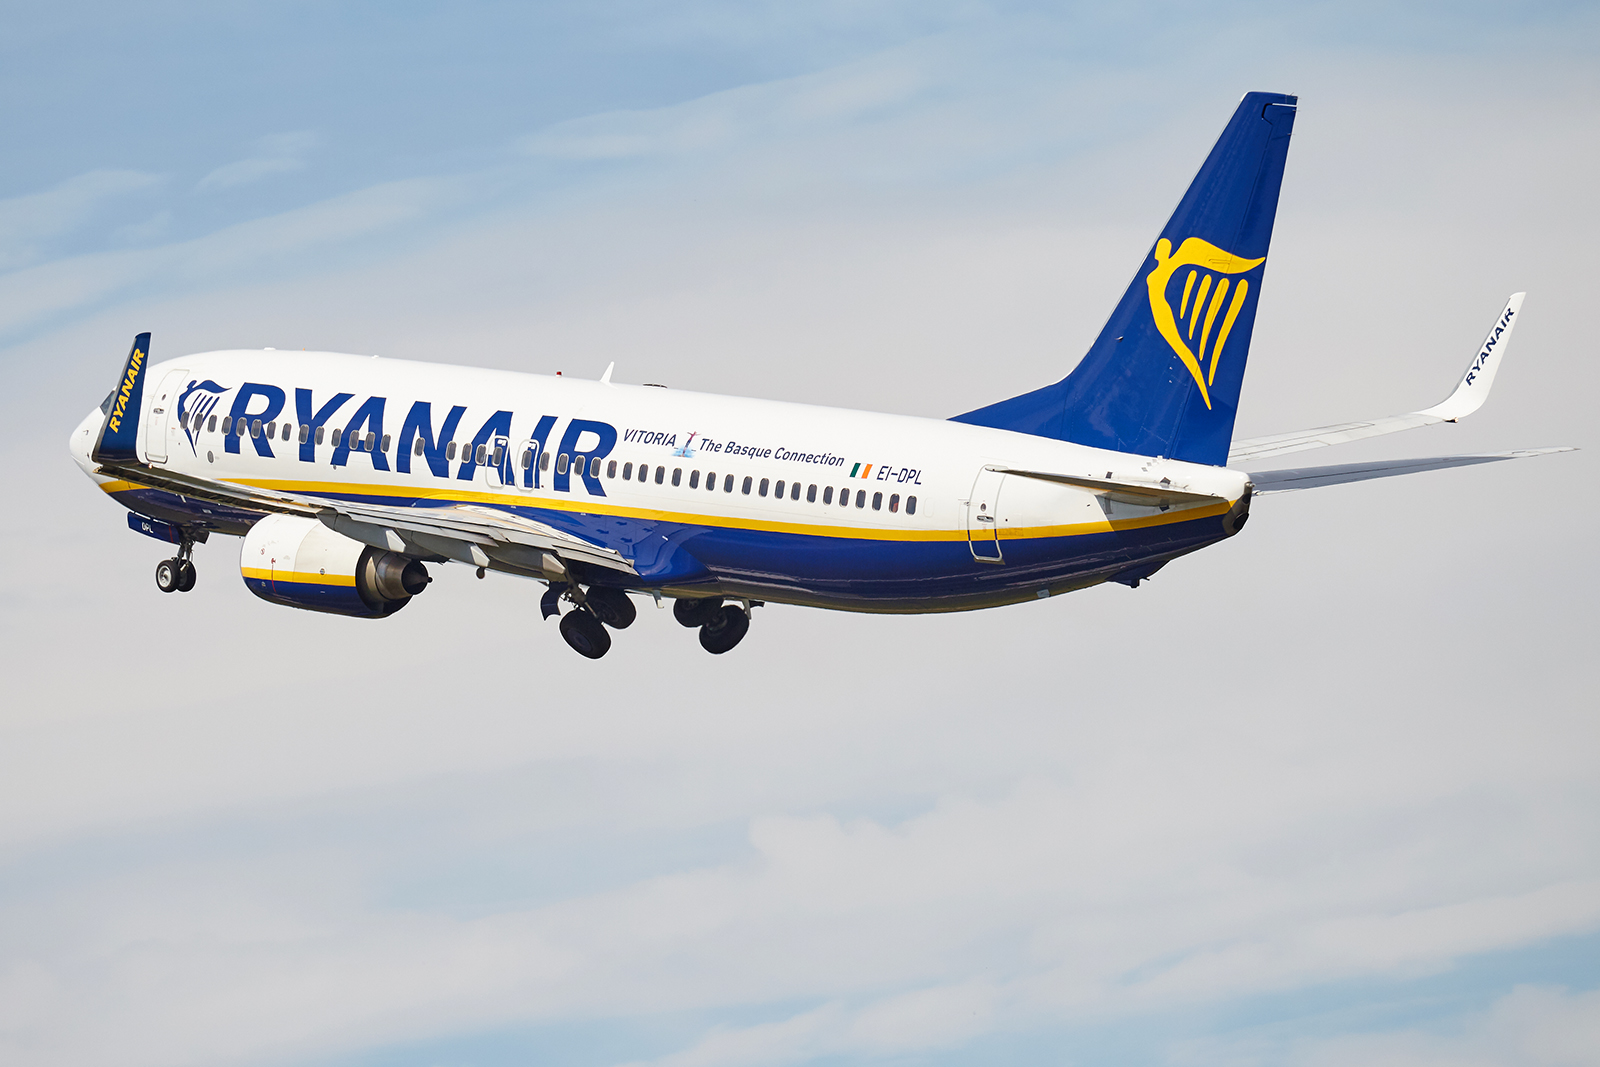 [02/06/2019] Boeing 737-800 (EI-DPL) Ryanair patch "Vitoria" 1906030128205493216260792